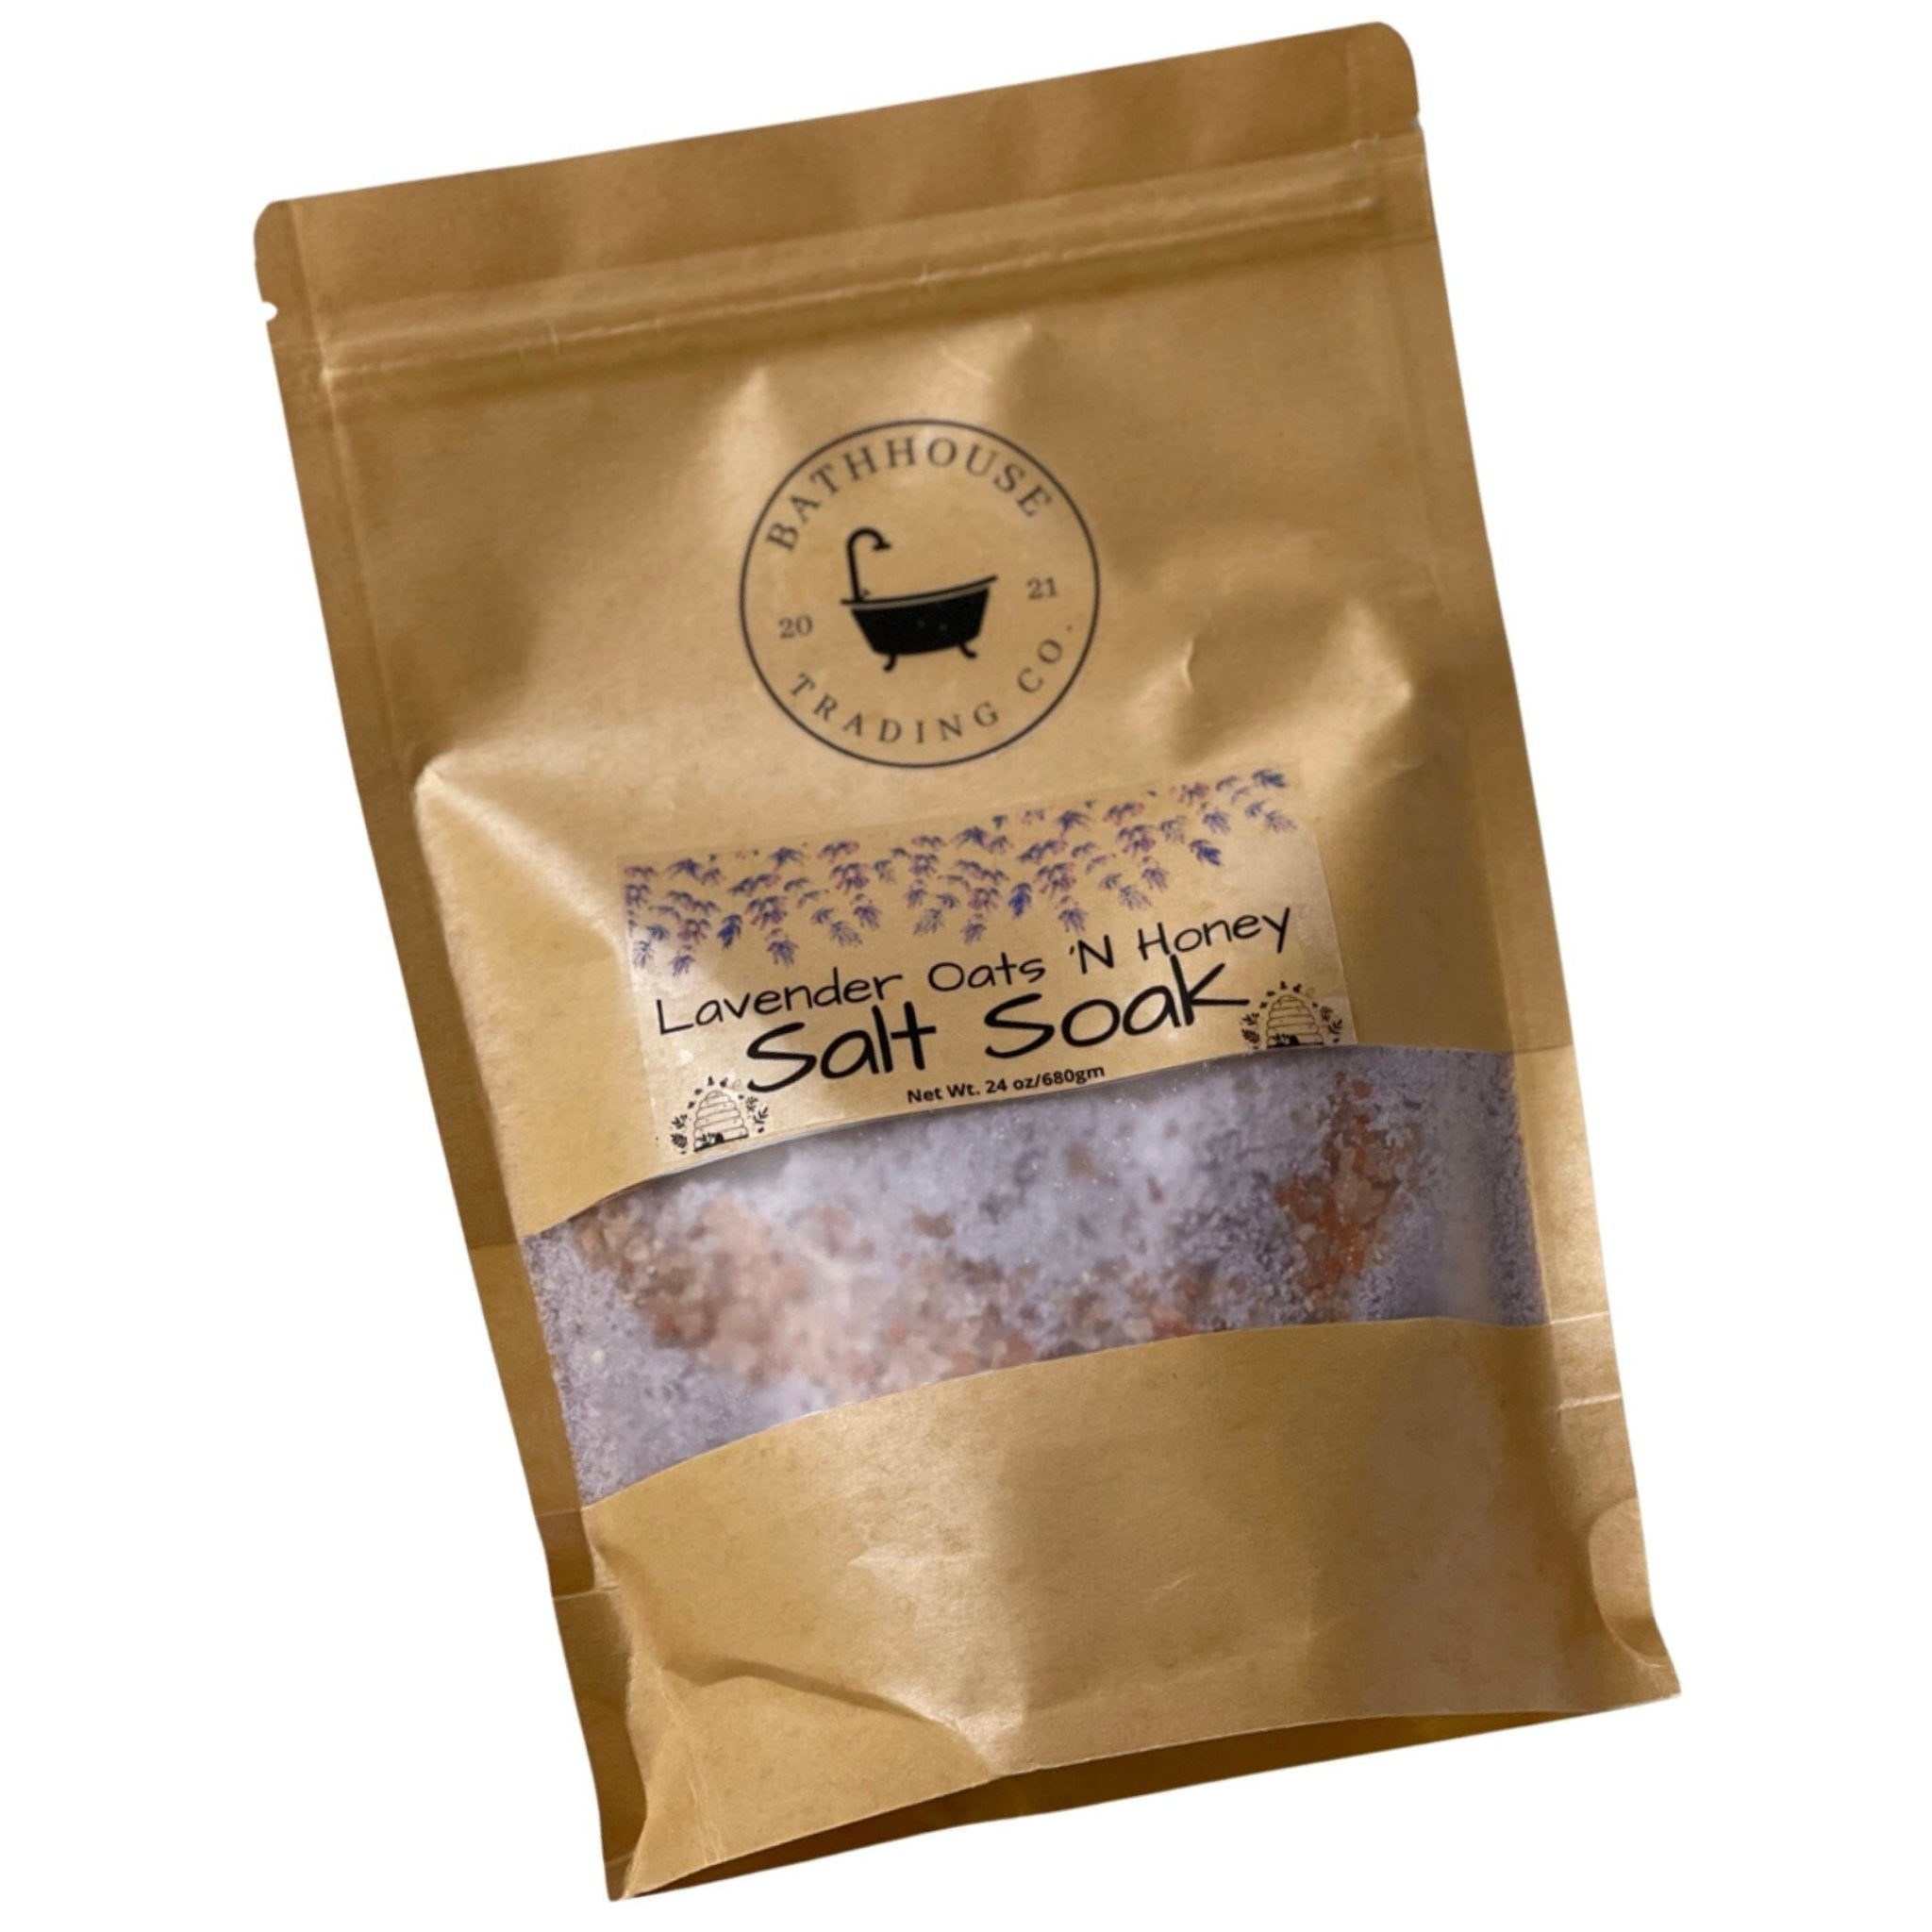 Lavender Oats 'N Honey Salt Soak - Bathhouse Trading Company